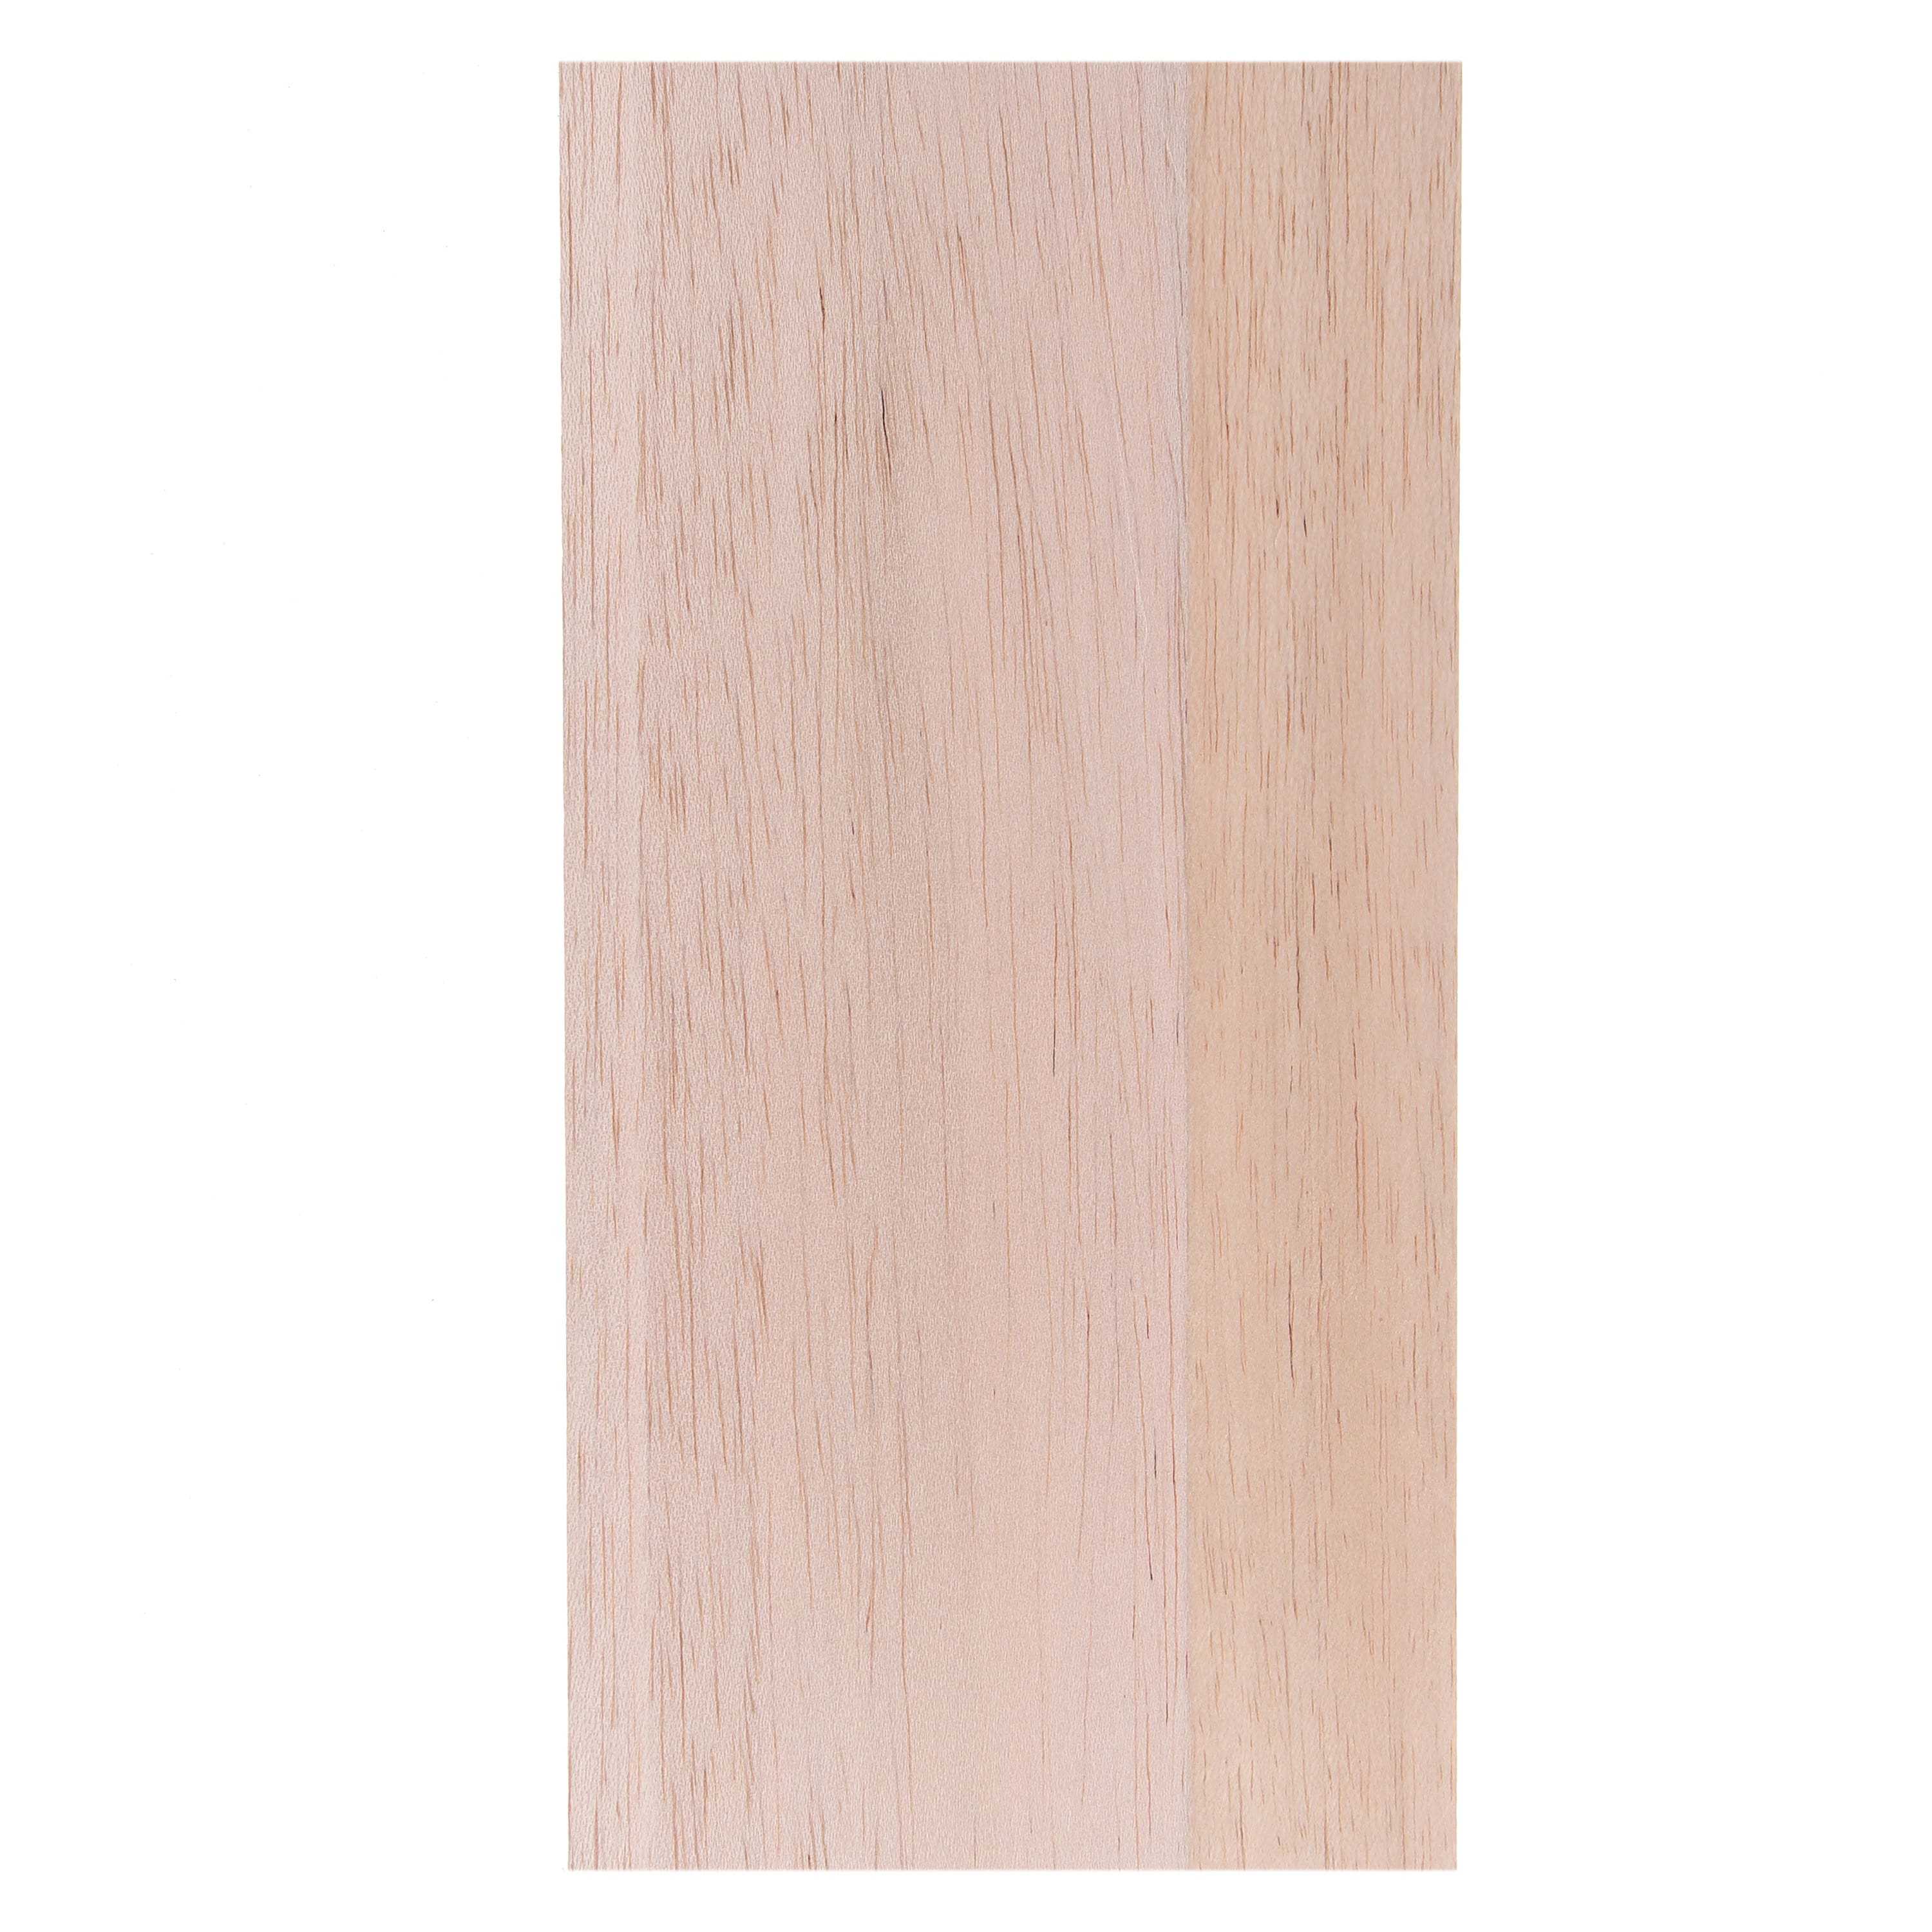 Make Market 6 x 12 Balsa Wood Surface - Each